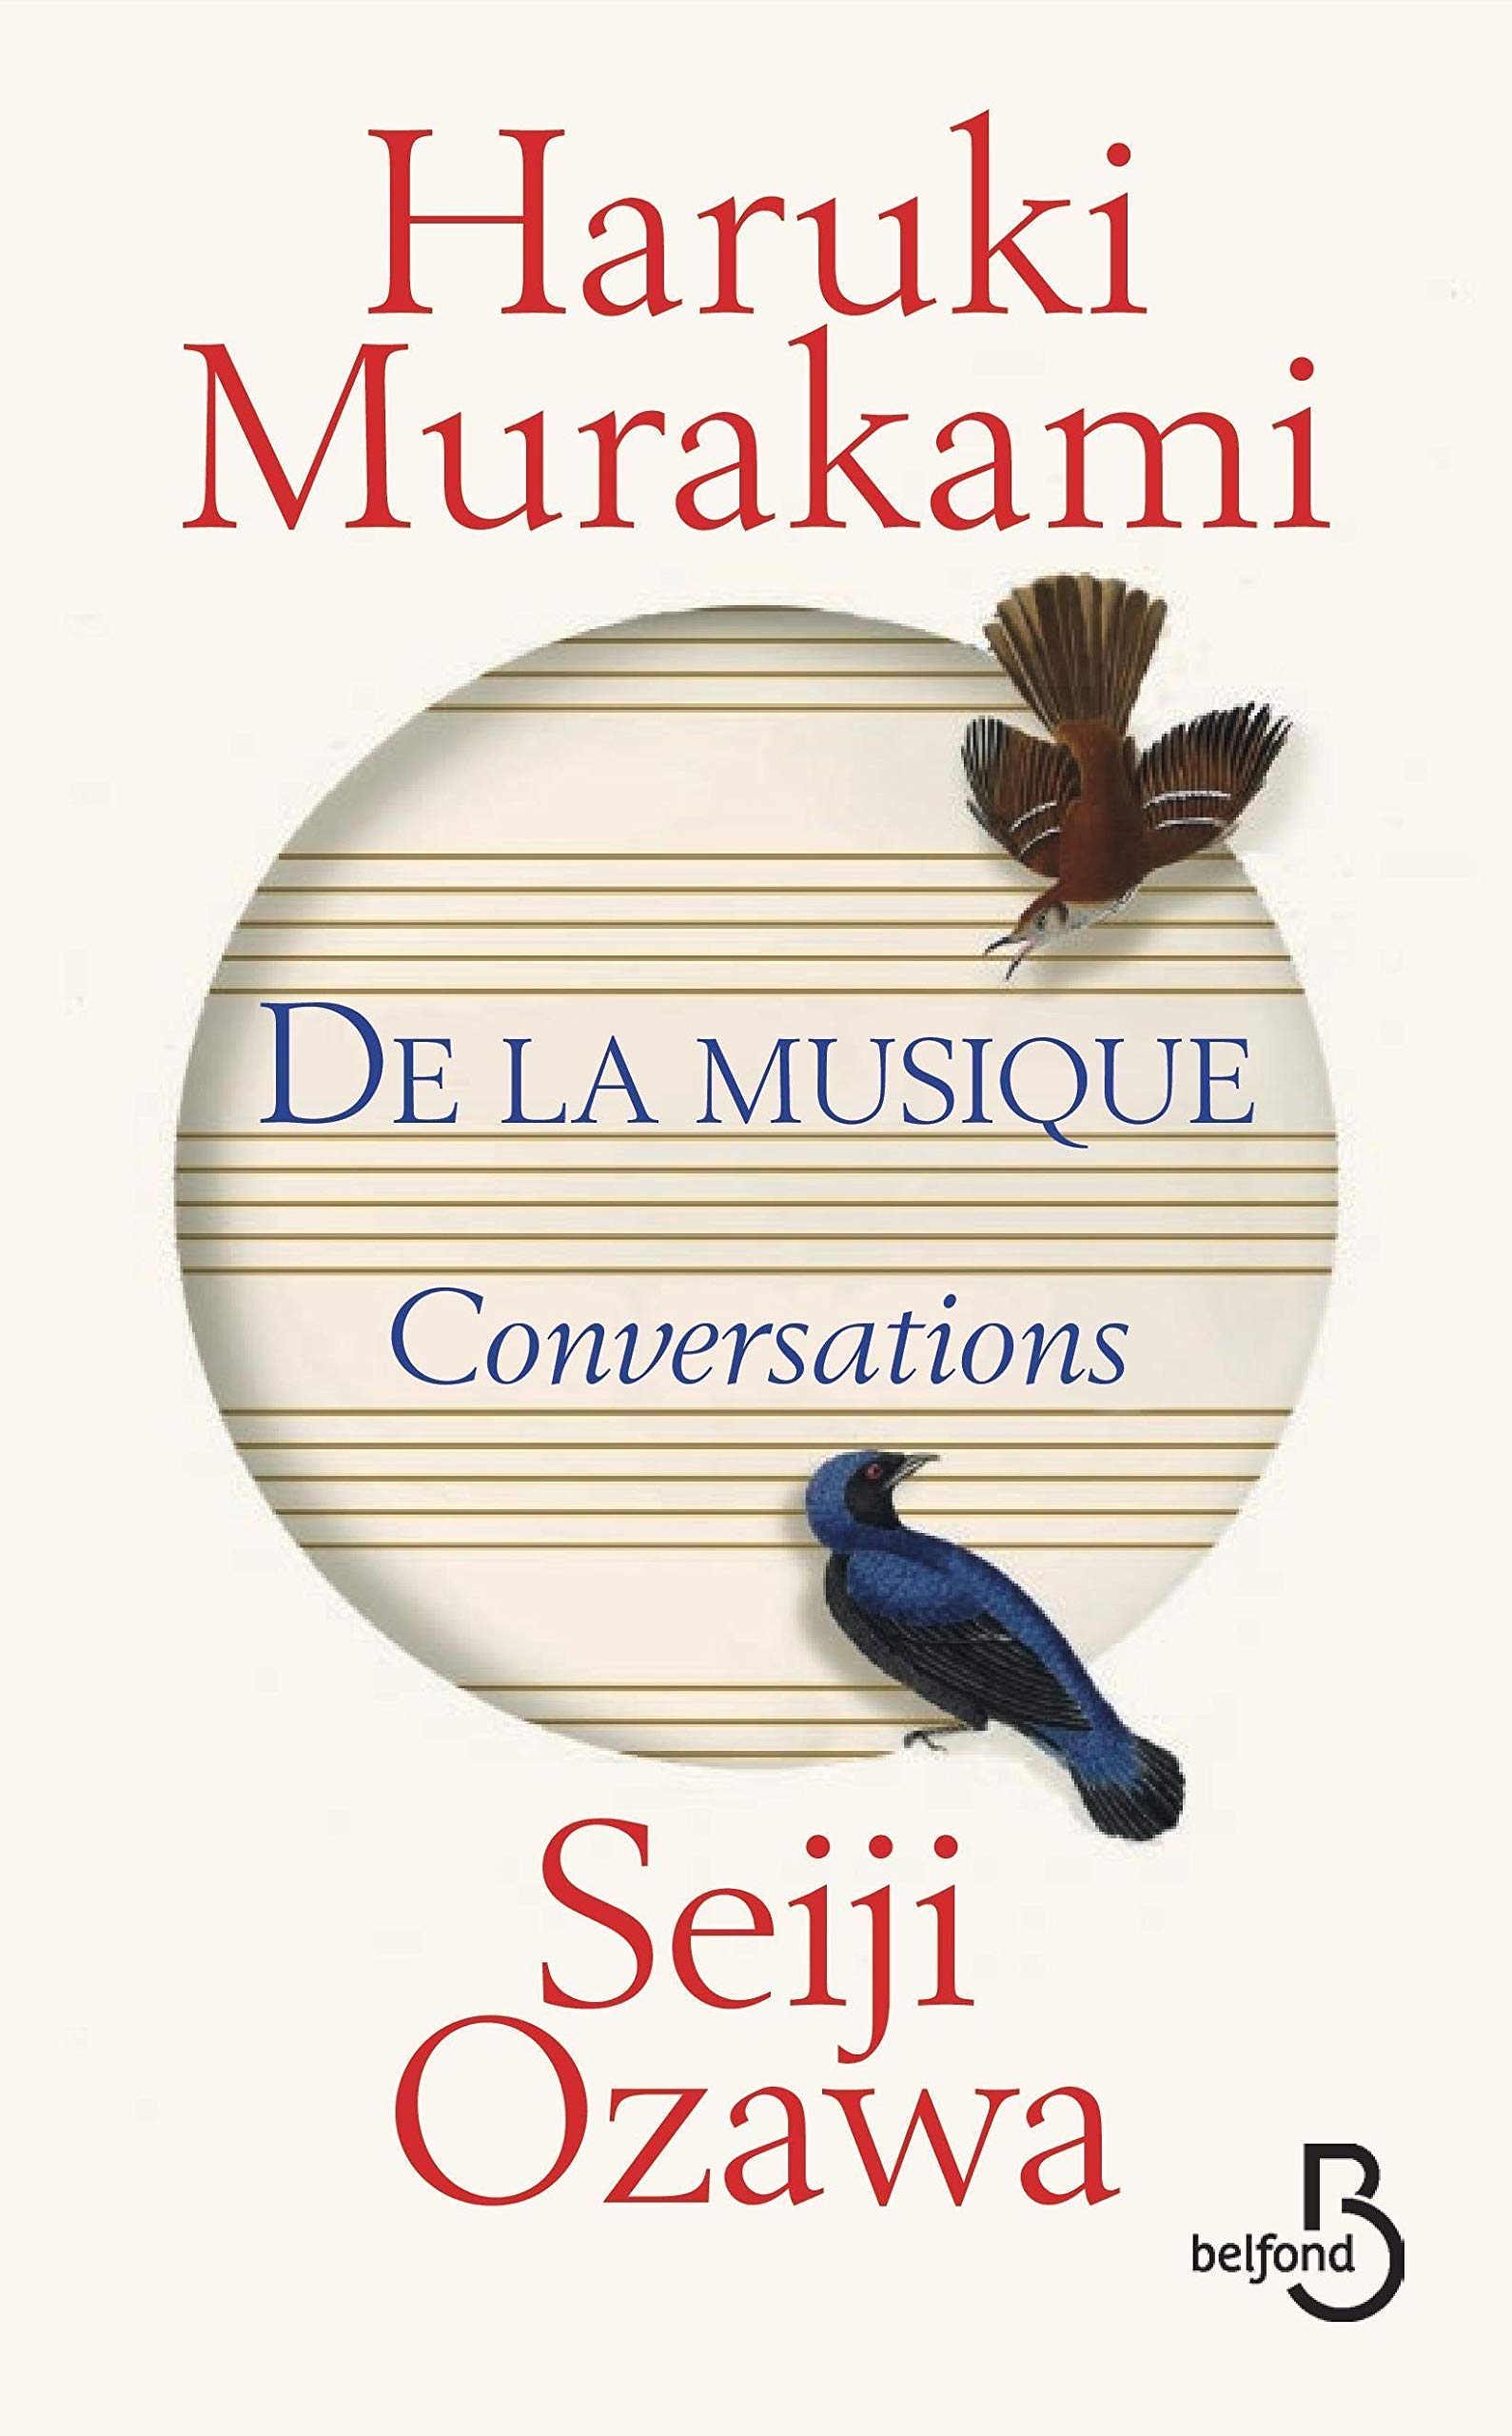 « DE LA MUSIQUE Conversations ». Conversations entre l’écrivain Haruki Murakami et le chef d'orchestre Seiji Ozawa.